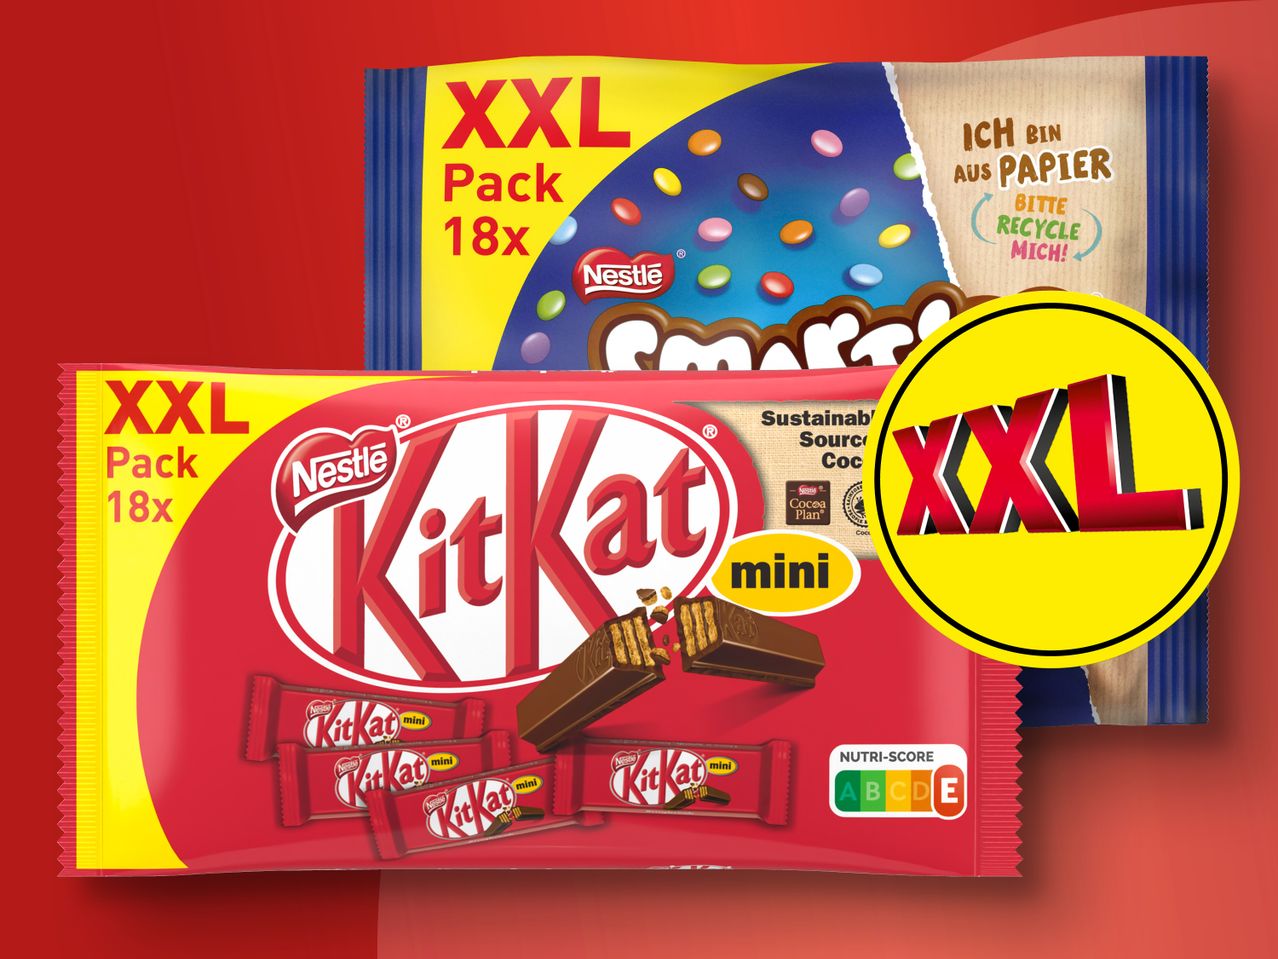 Mini Pack KitKat/Smarties Nestlé XXL